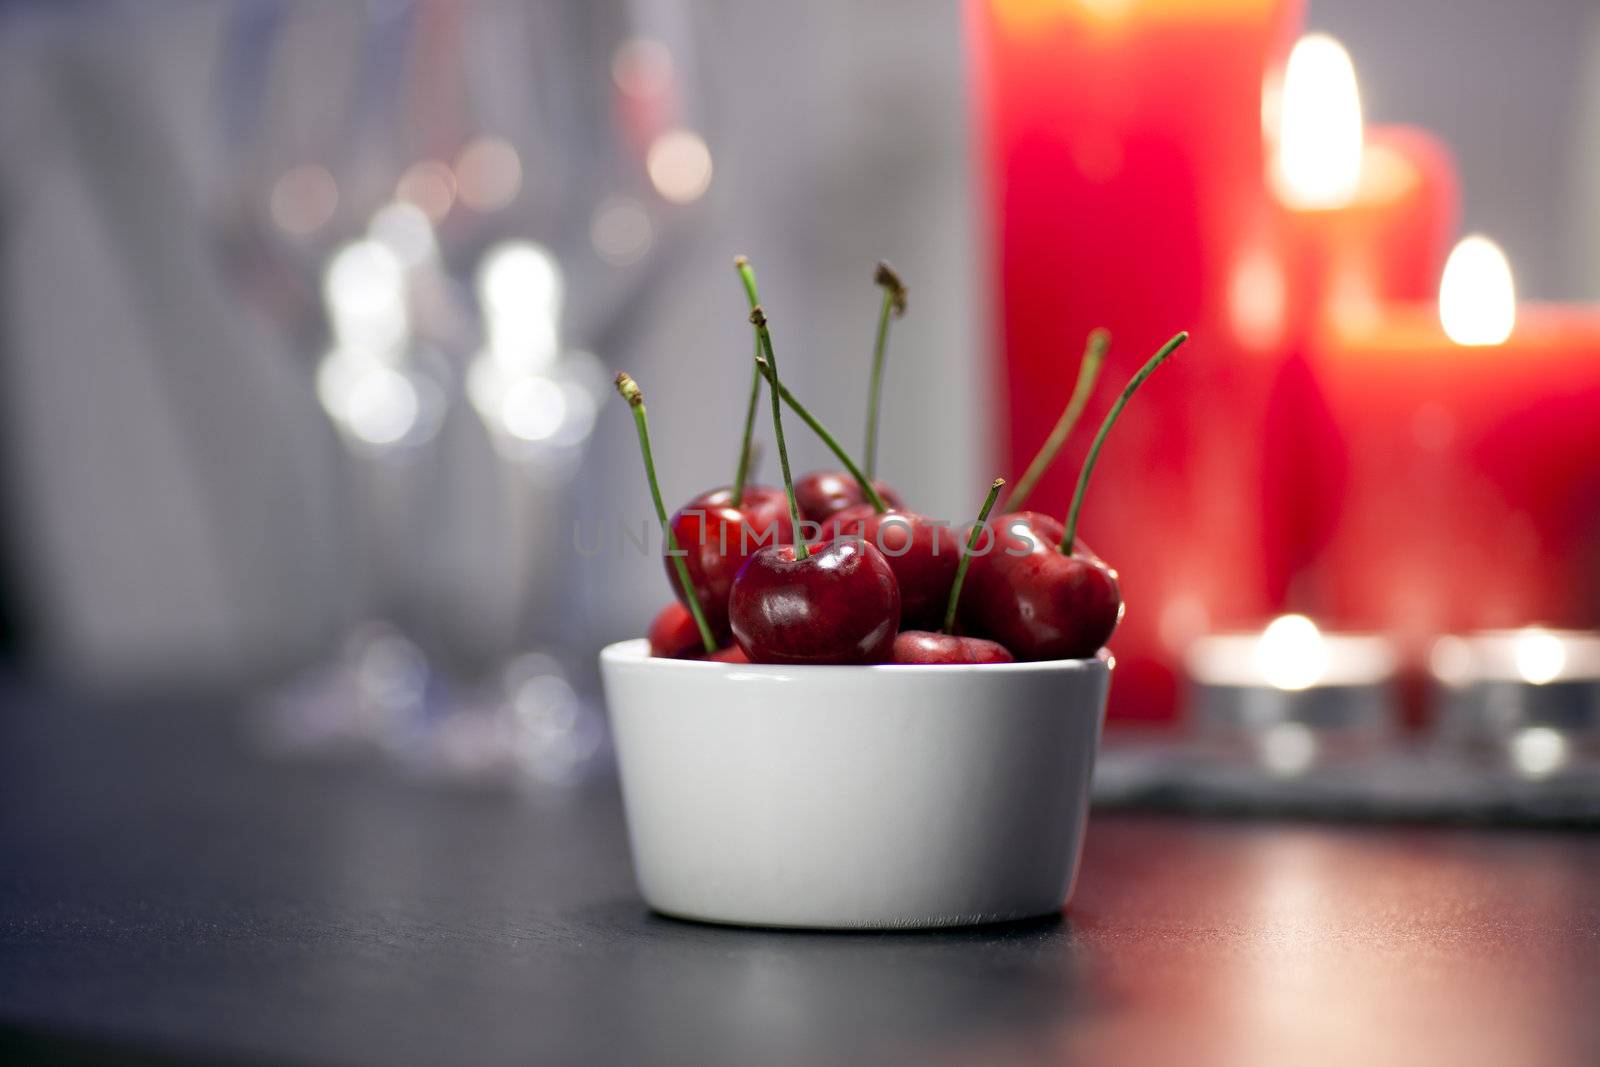 Cherries on Table by charlotteLake